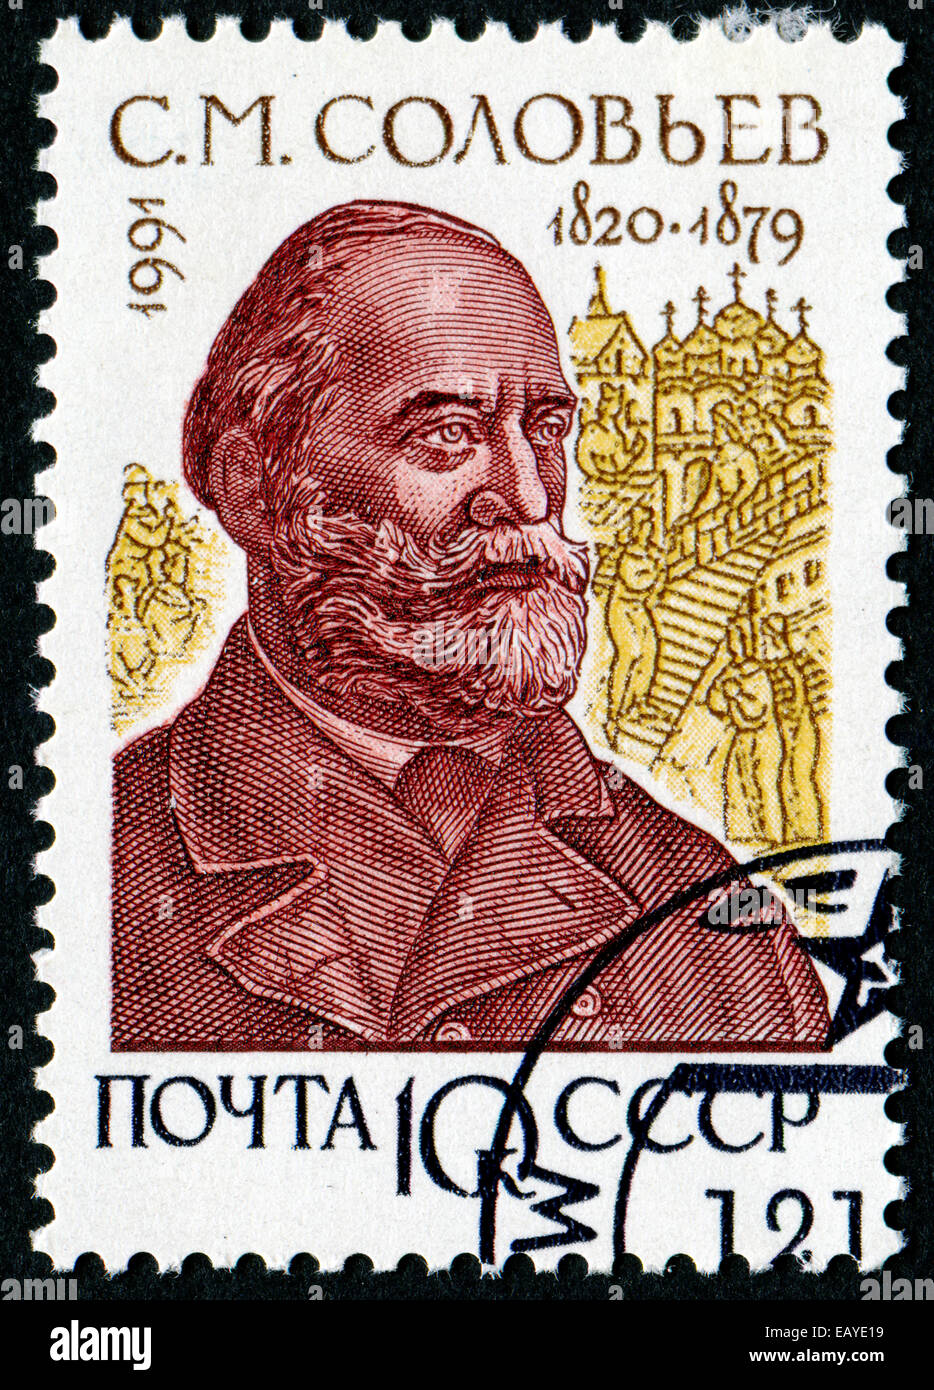 Unione Sovietica - circa 1991: un timbro stampato in URSS mostra Soloviev (1820-1879), Serie storici russi, circa 1991 Foto Stock